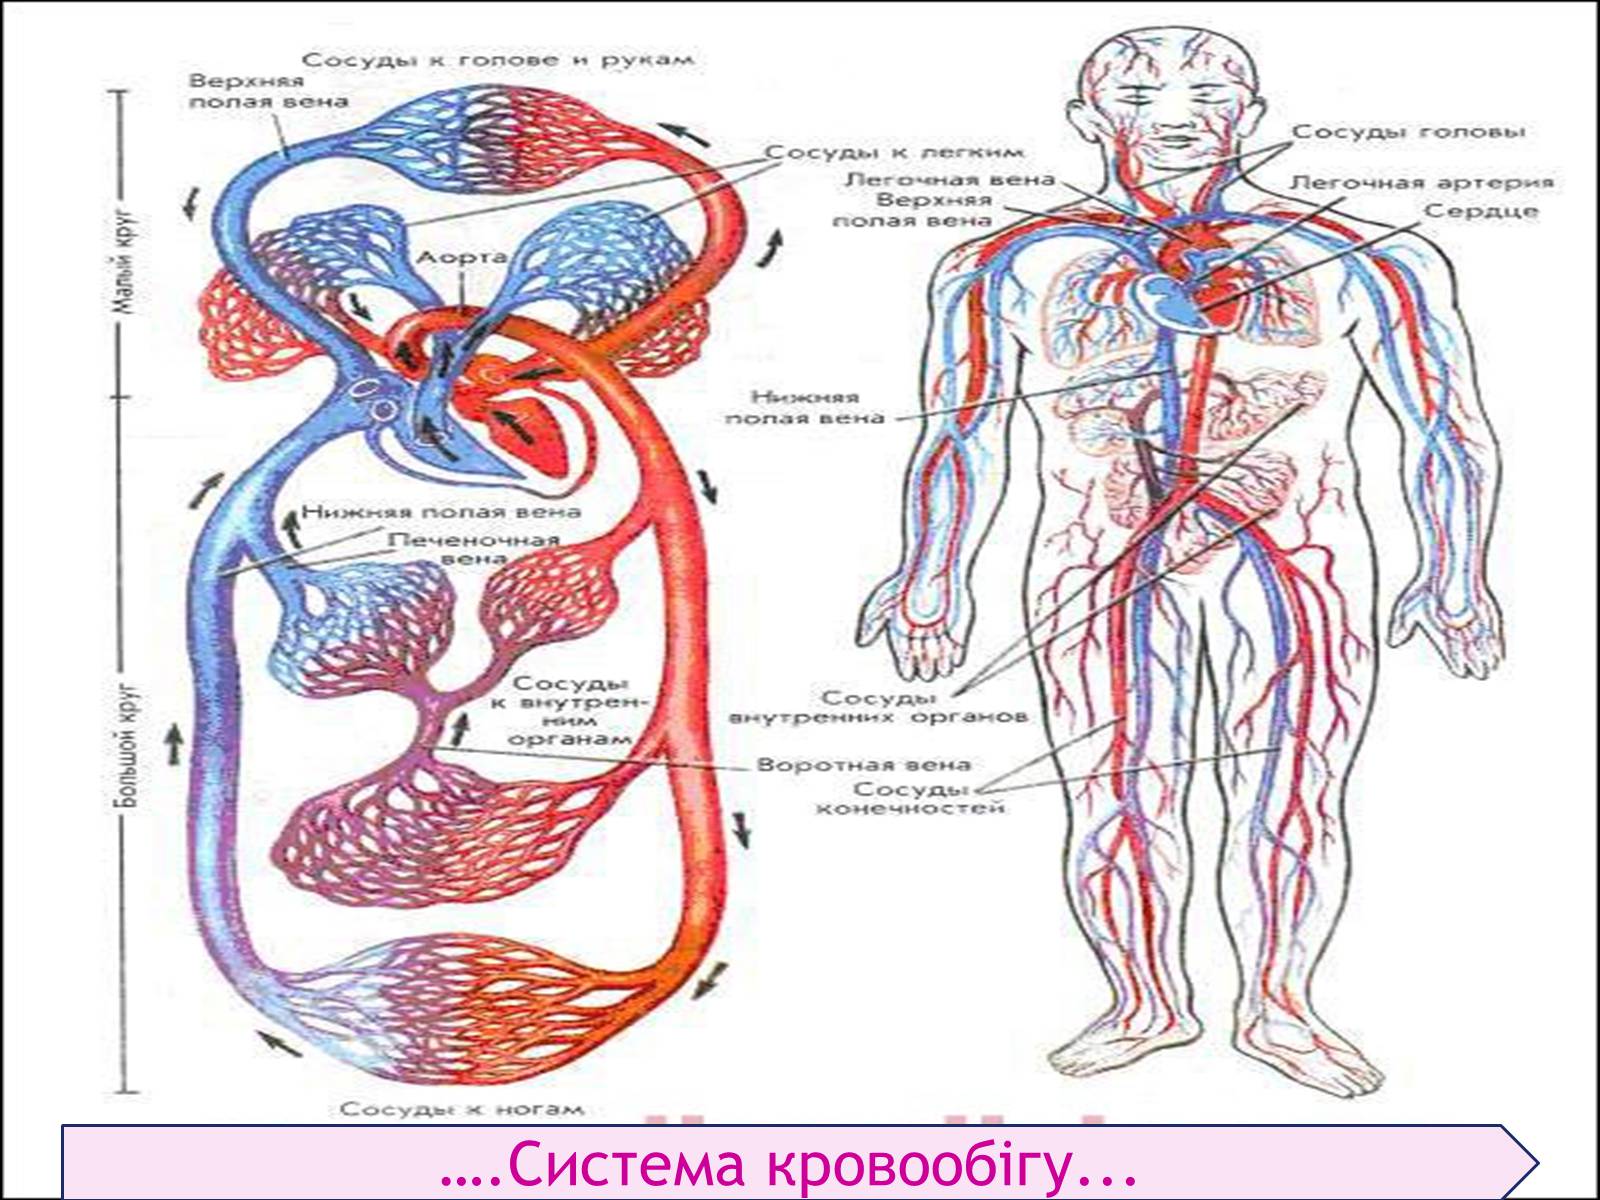 Схема артерий и вен